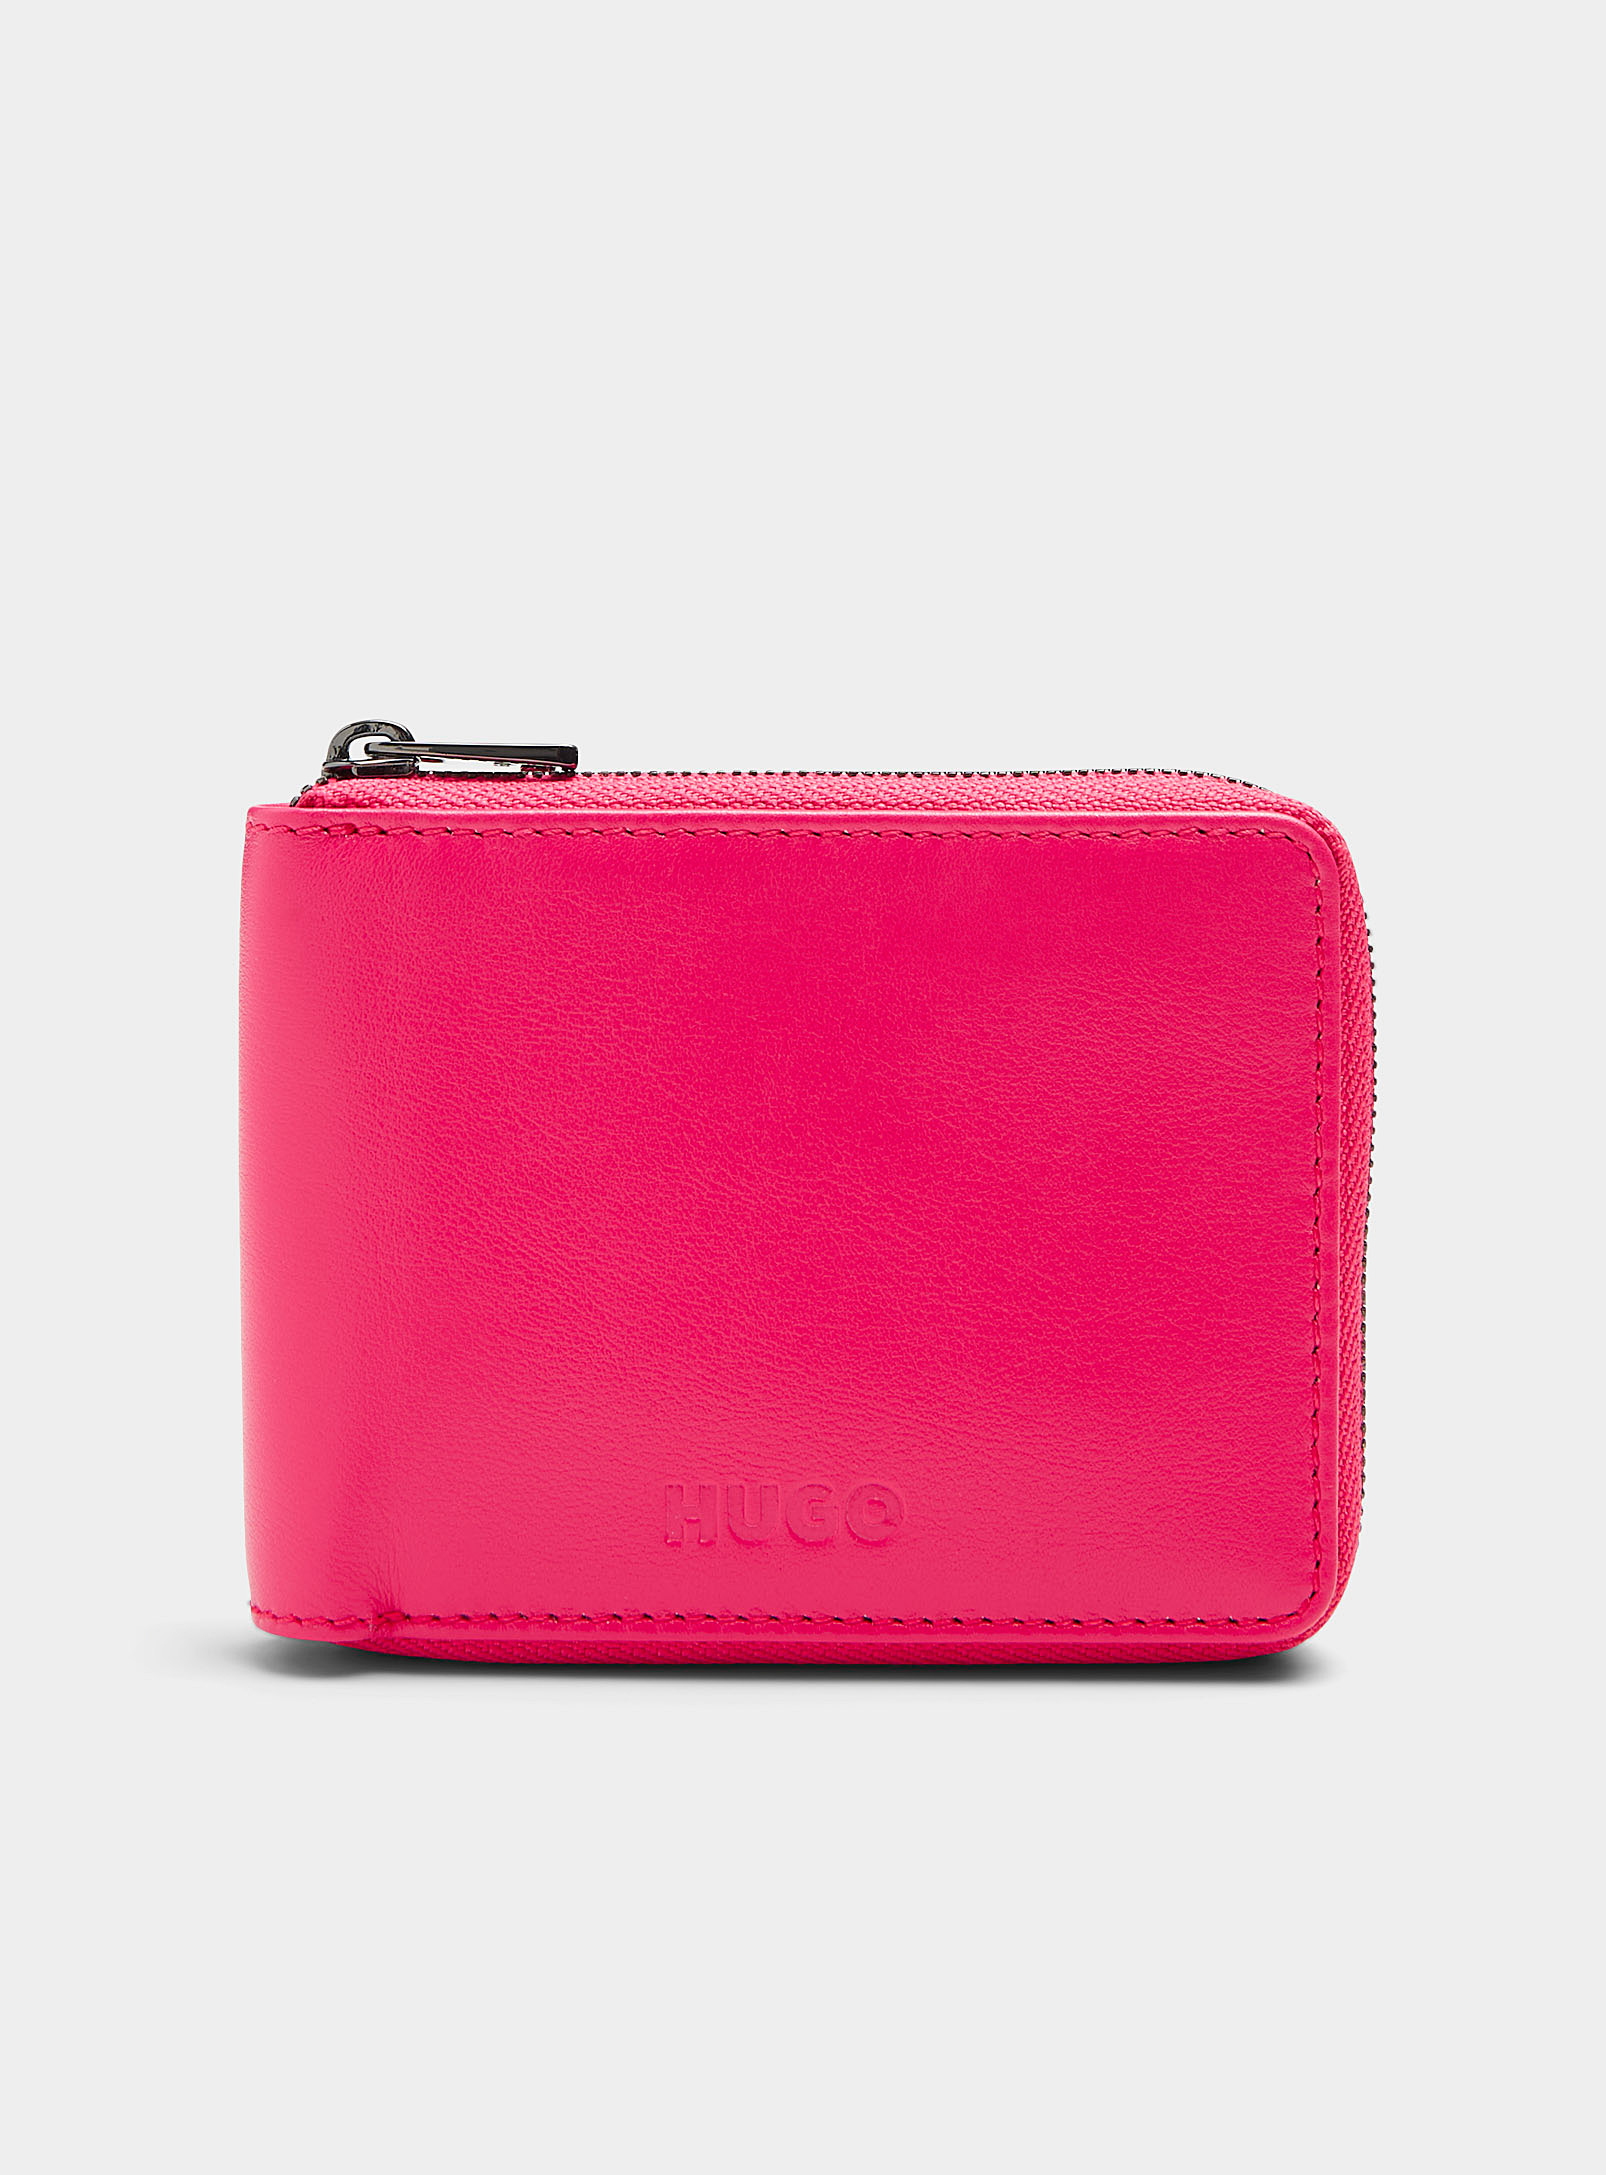 HUGO - Men's Vibrant pink leather zip wallet